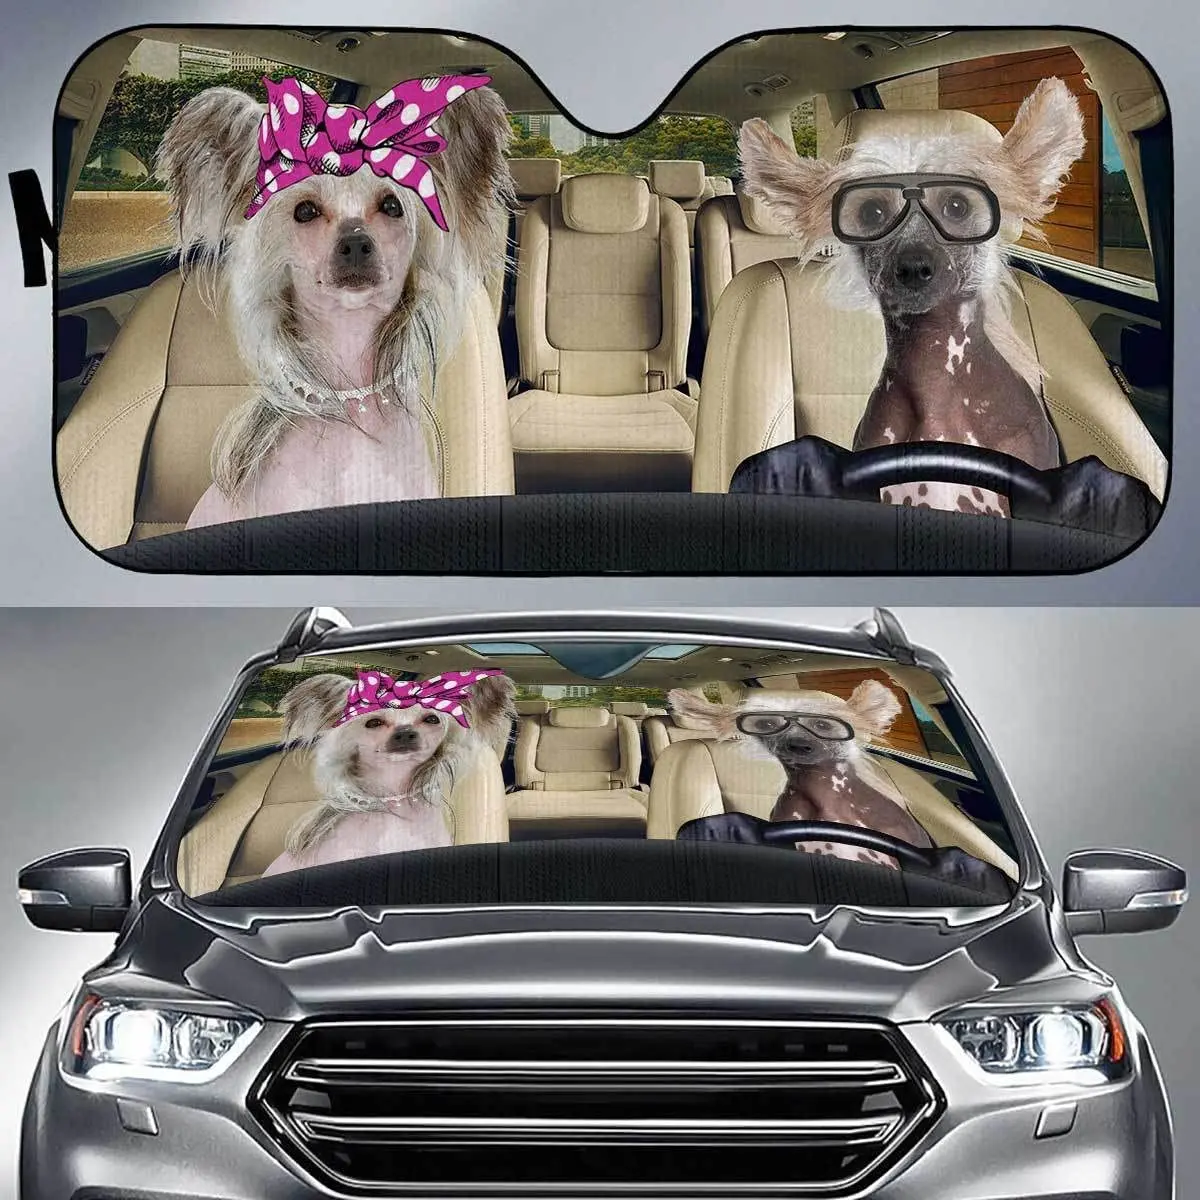 

Забавные китайские хохлатые собаки, двойные рандомные солнцезащитные очки для автомобиля, китайские хохлатые собаки в розовой повязке на голову и очки Auto Su